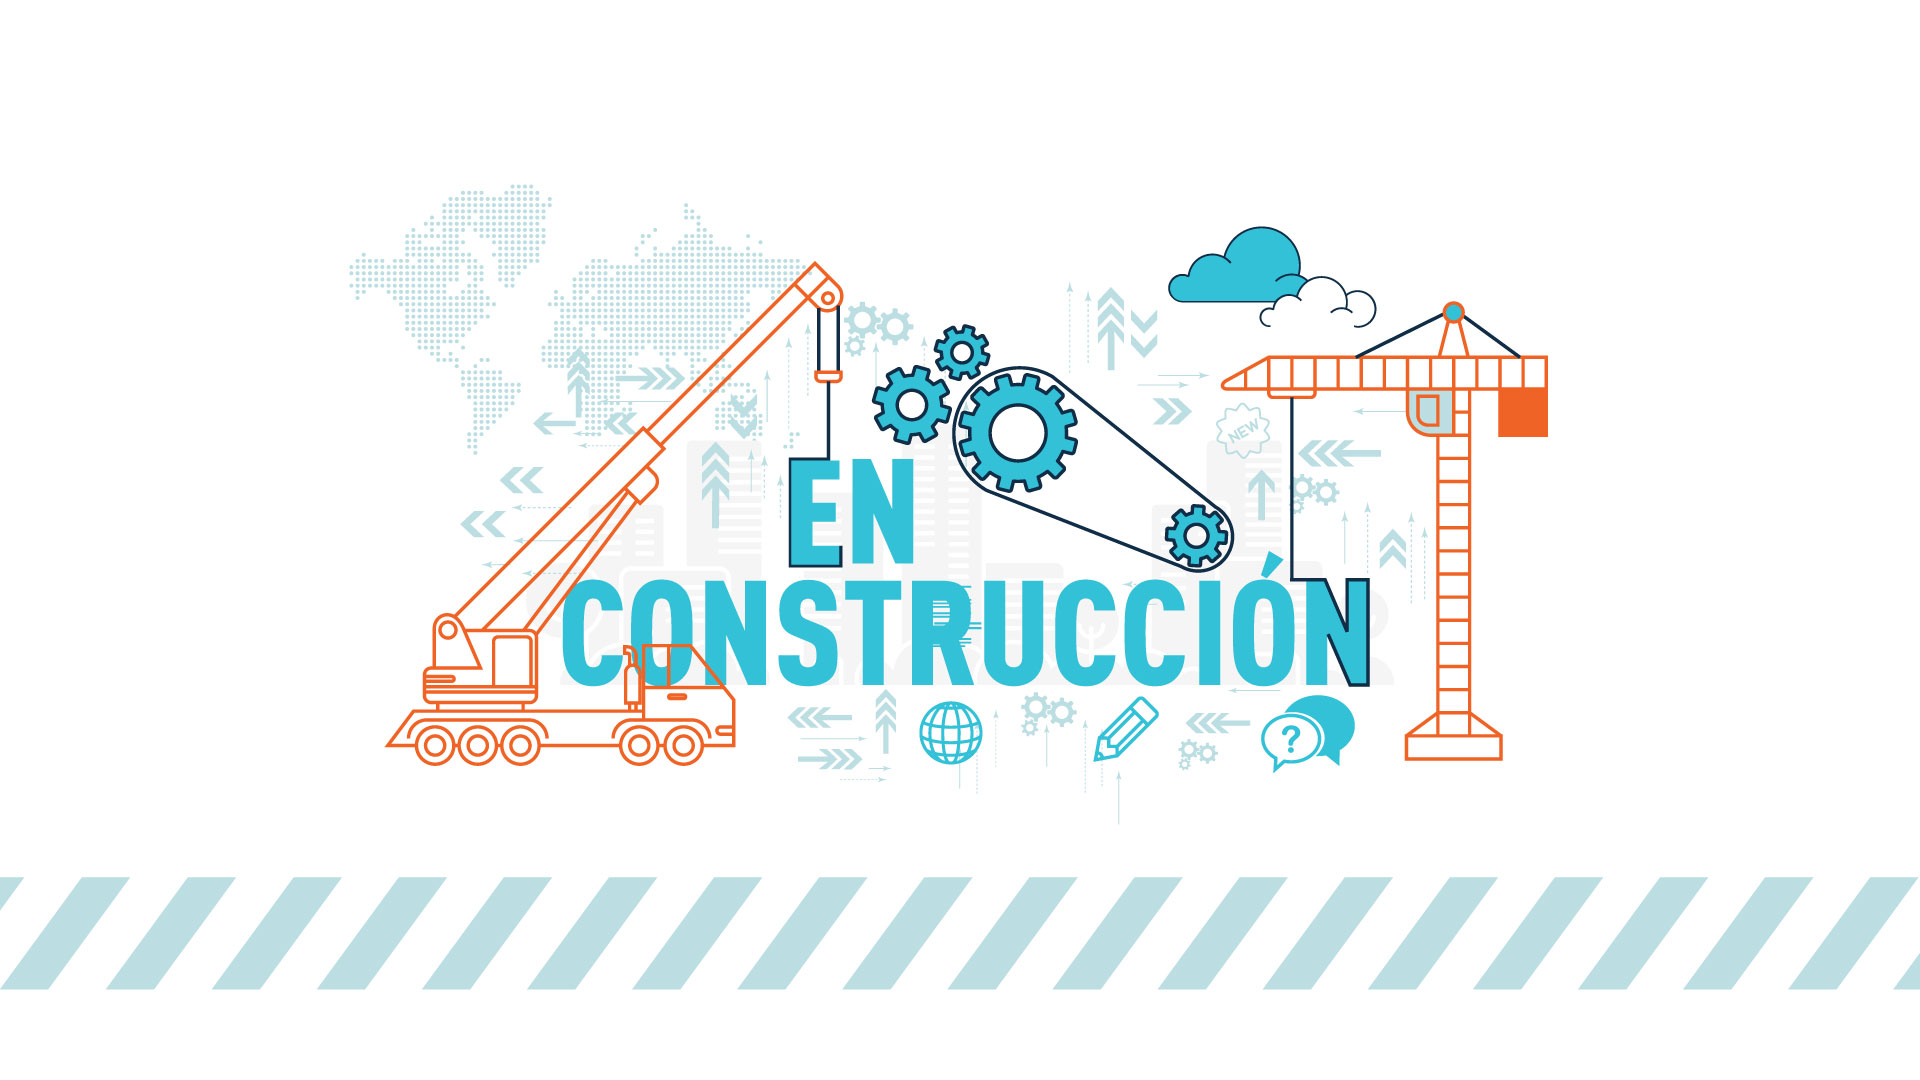 #EnCoonstruccion